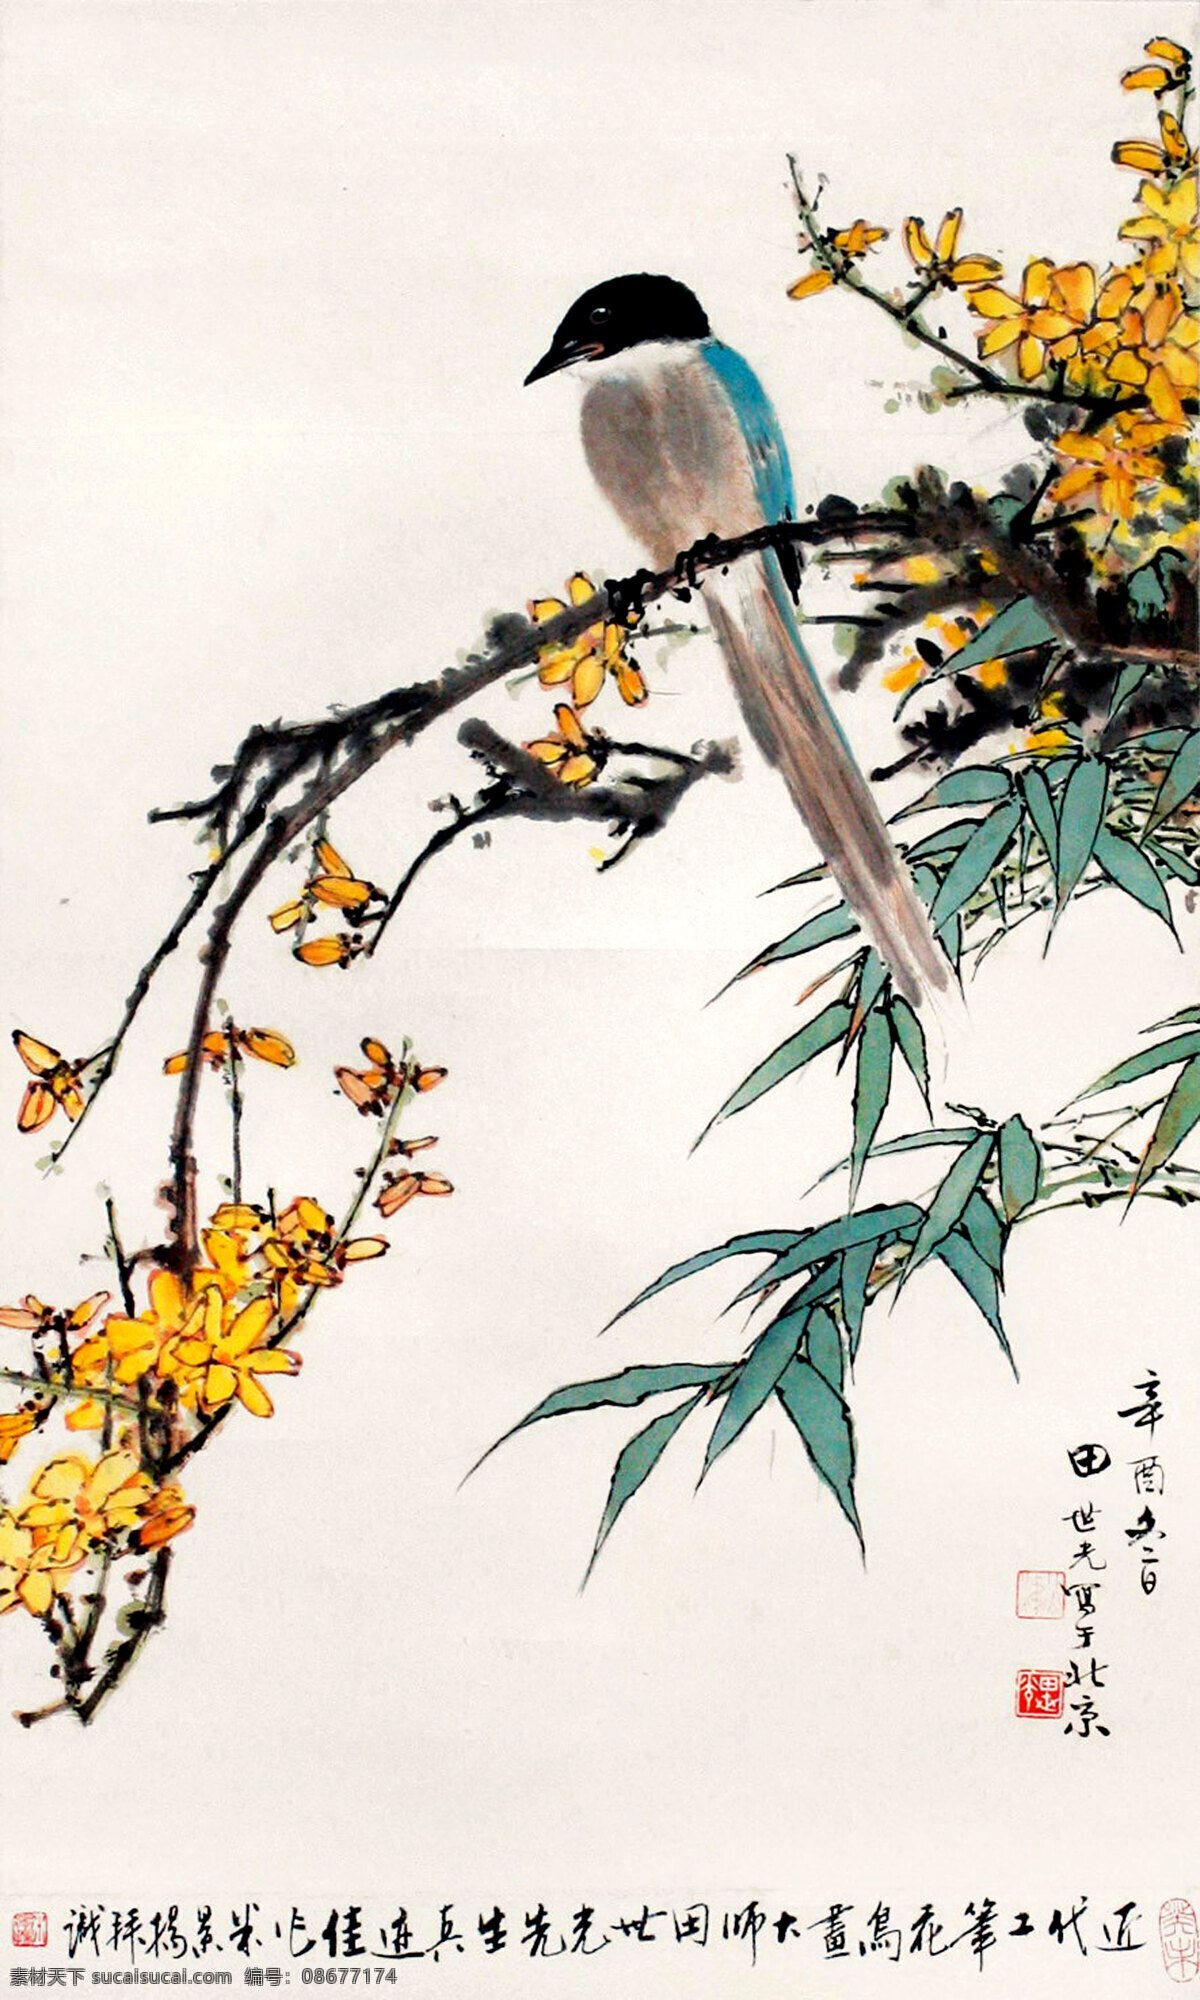 中国画 国画 中国风花鸟 水墨画 水墨鸟 花鸟 水彩画 工笔画 写意 中国风 文化艺术 传统文化 绘画书法